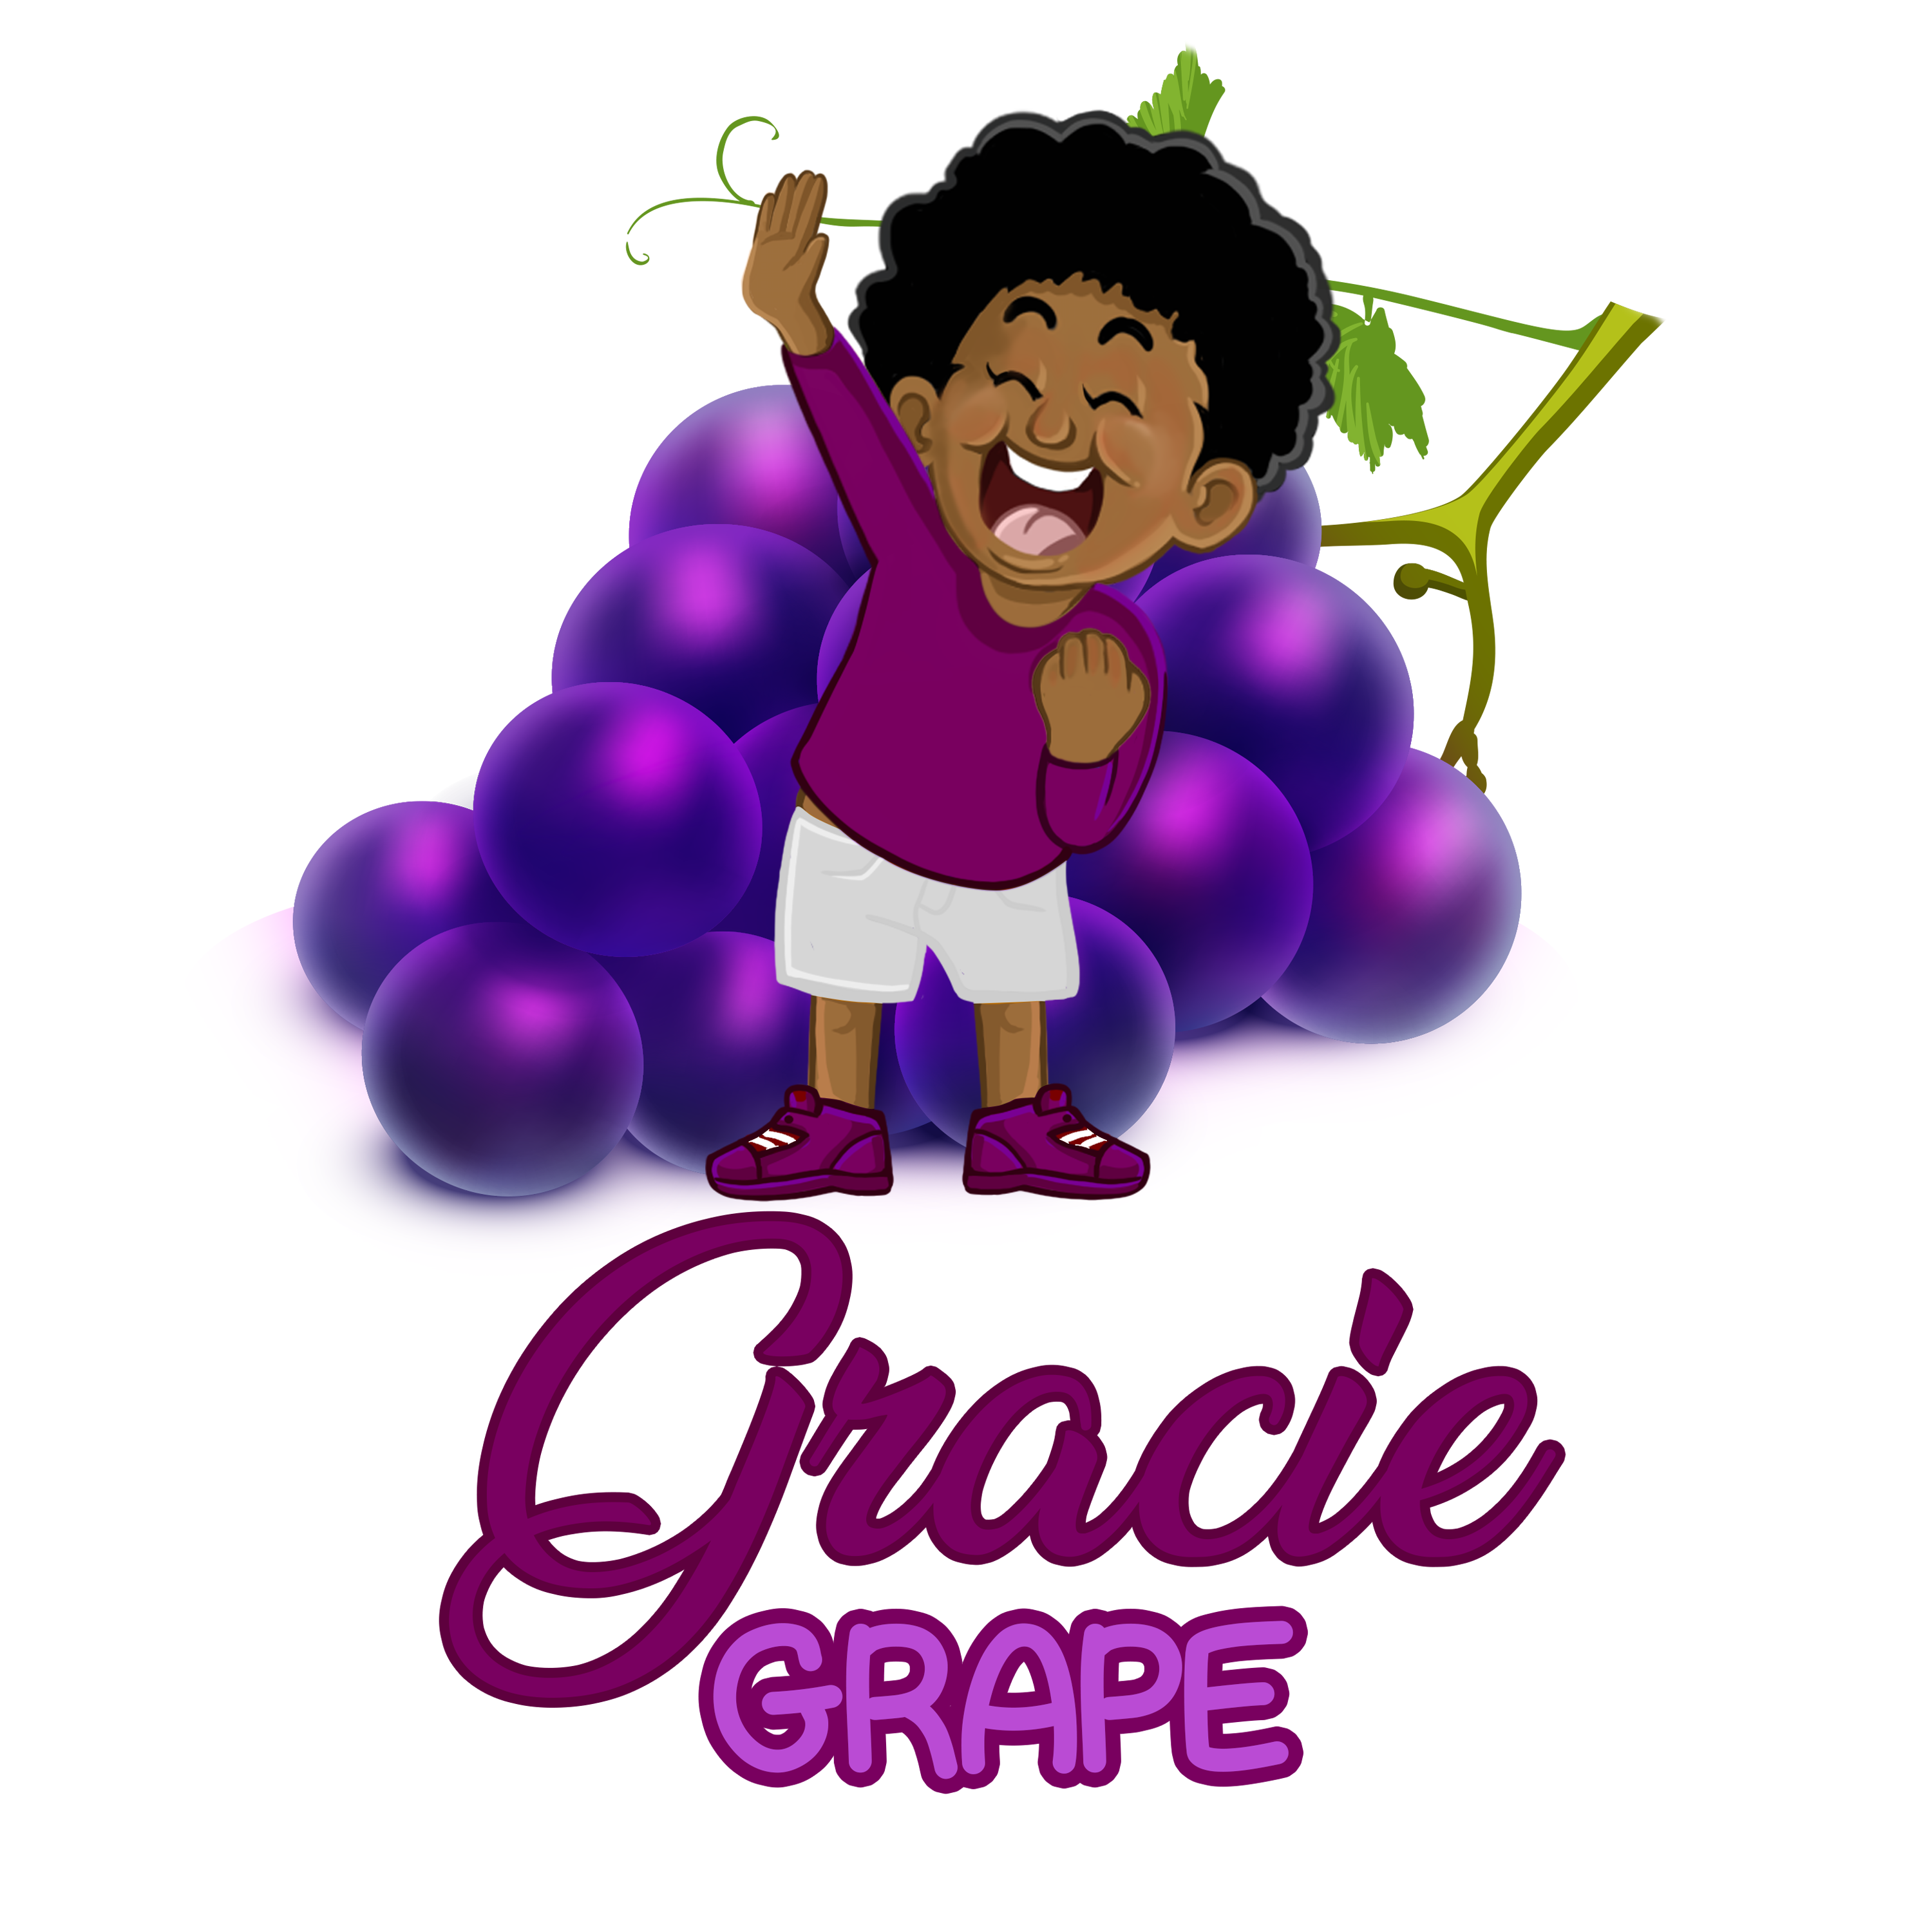 Gracie Grape